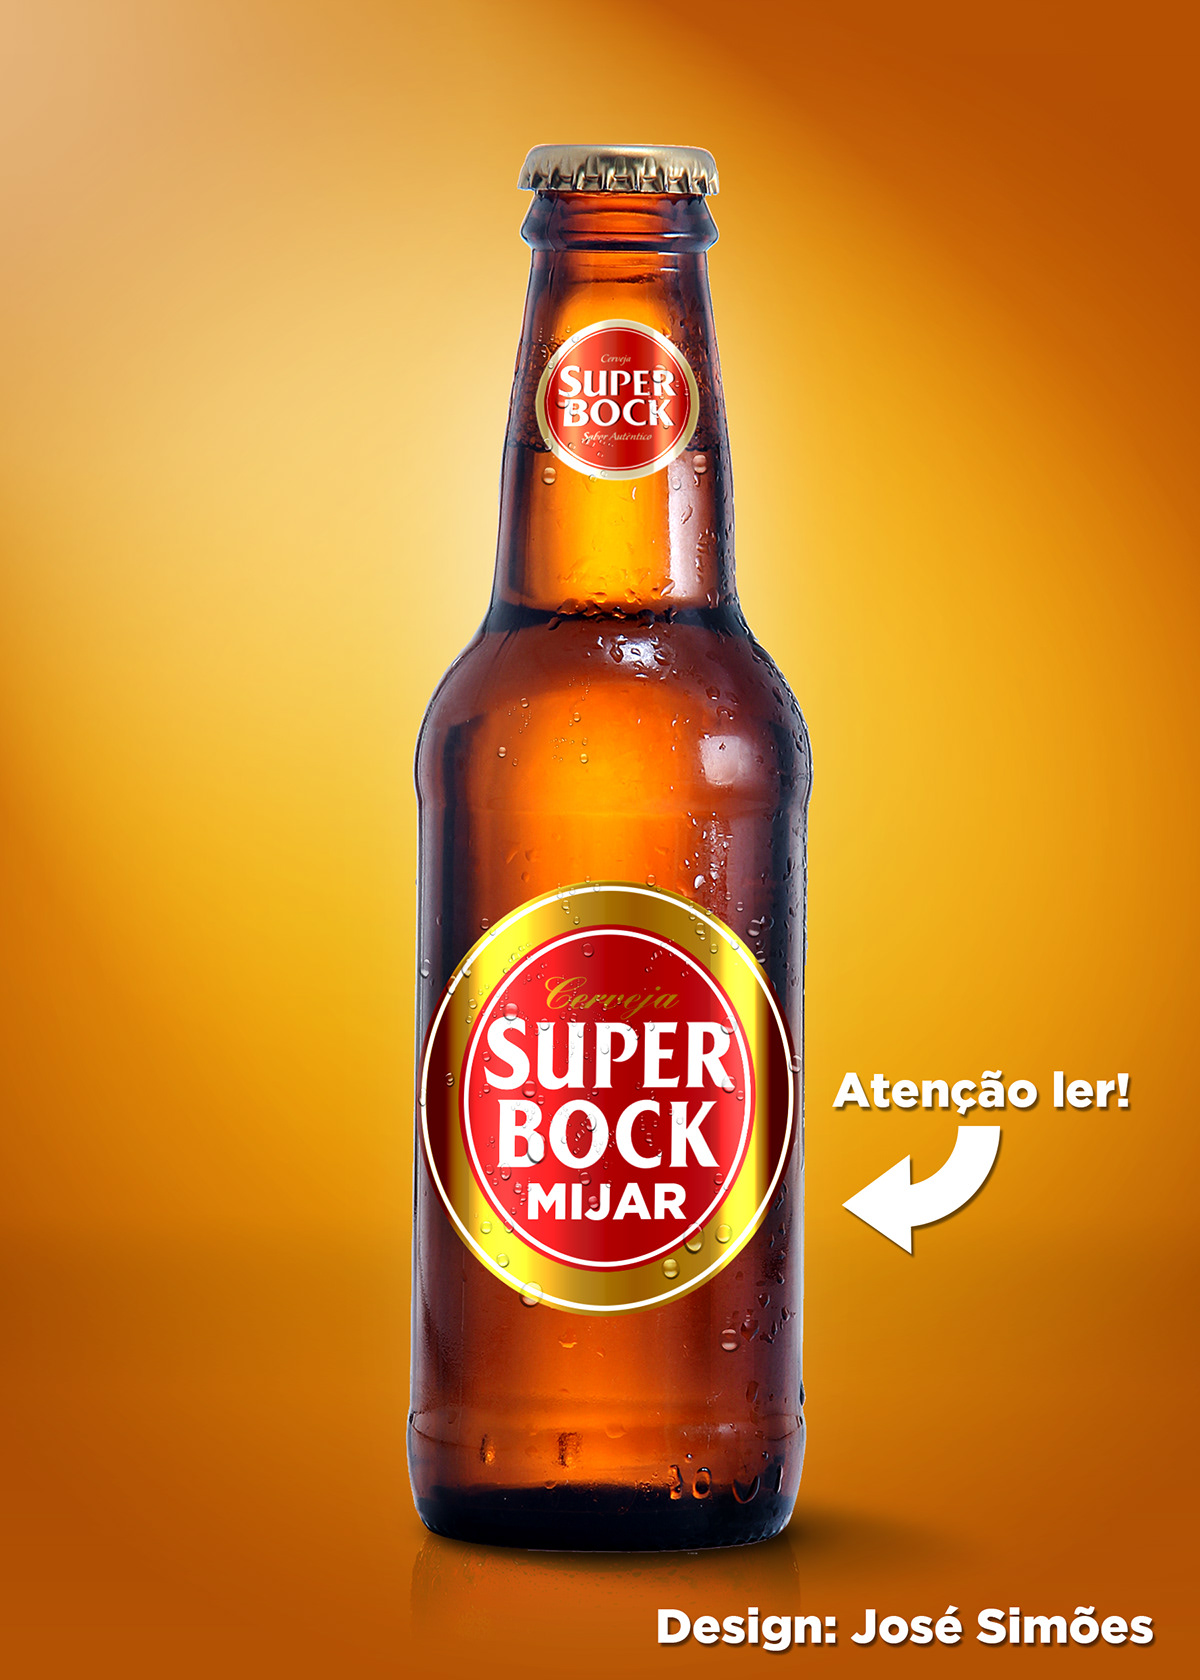 Super Bock Mijar